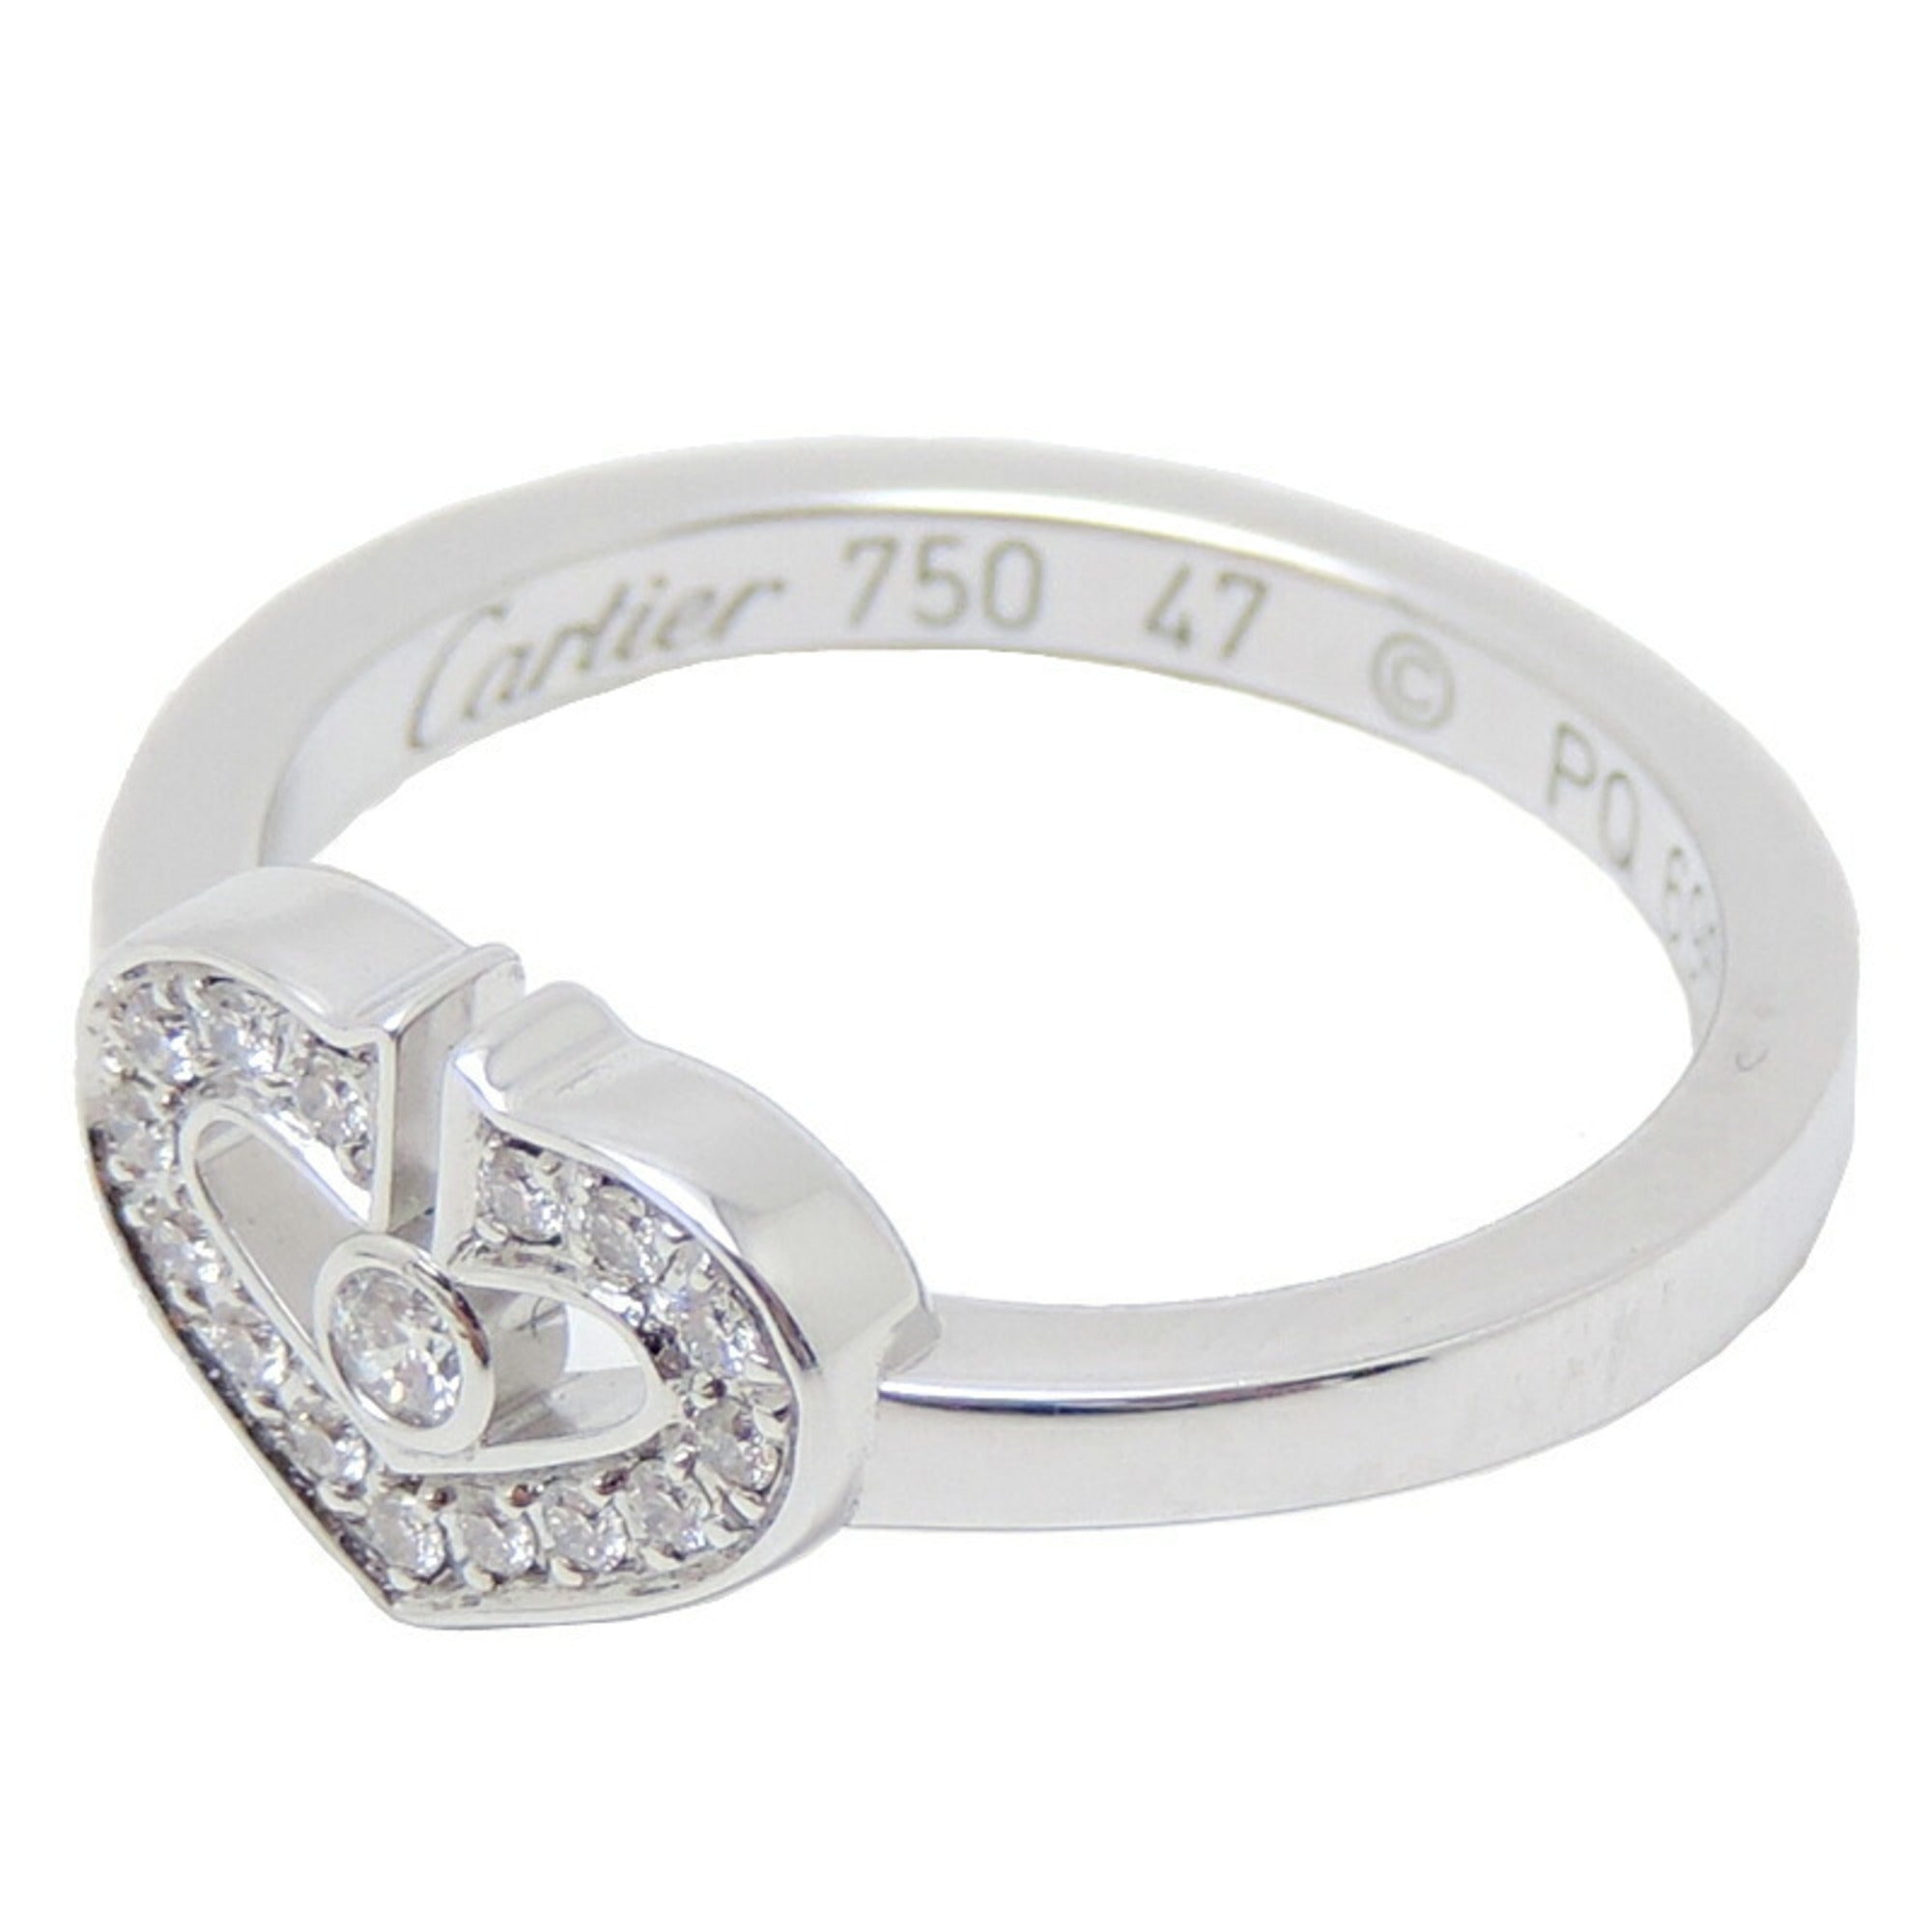 Cartier C Heart Diamond Ring 750 WG ♯47 - www.agame.ag